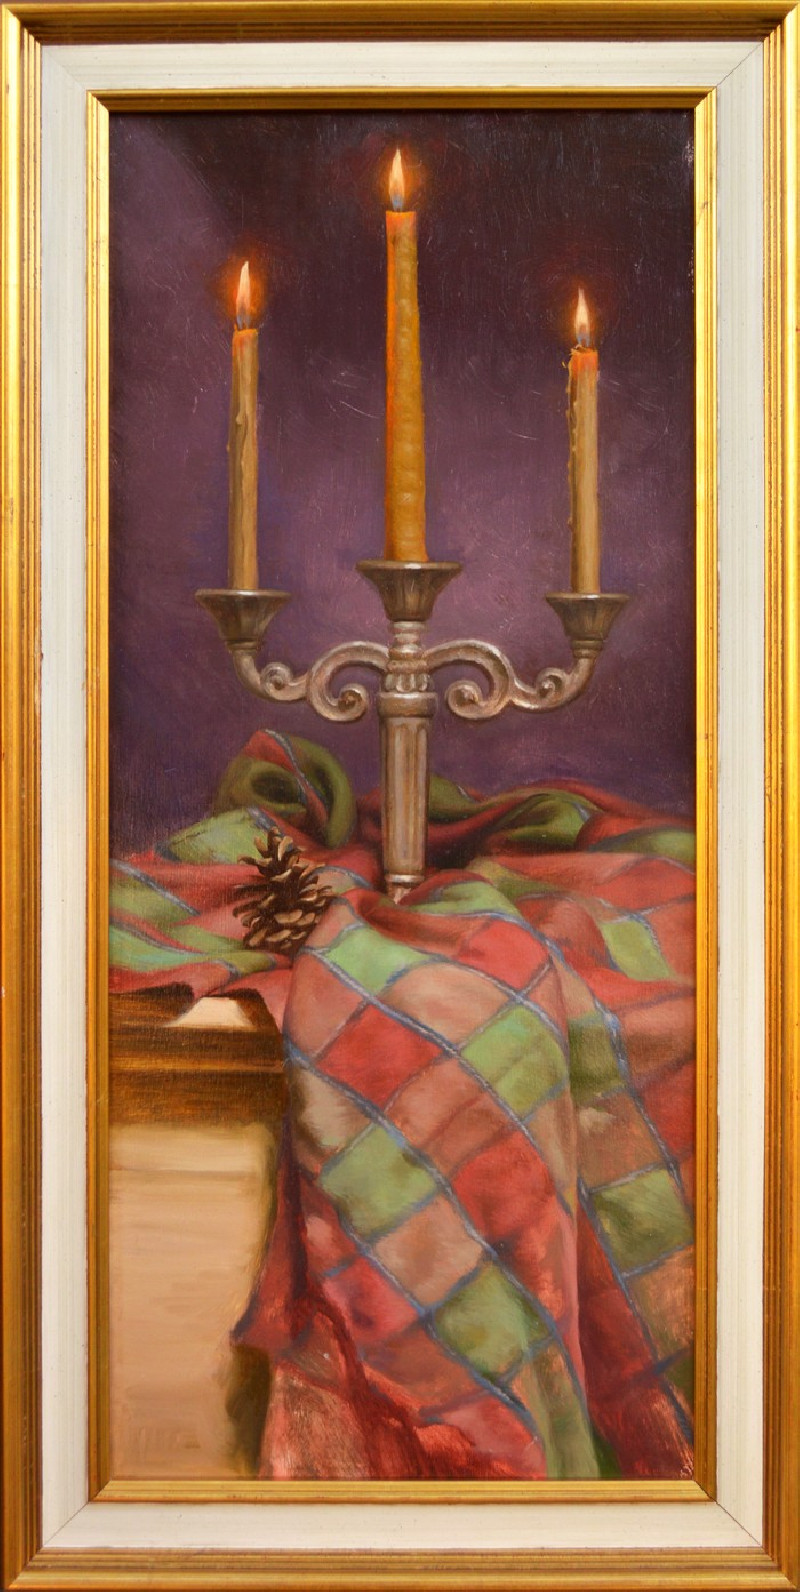 Donatas Inis tapytas paveikslas Natiurmortas su žvakėmis, Natiurmortai , paveikslai internetu